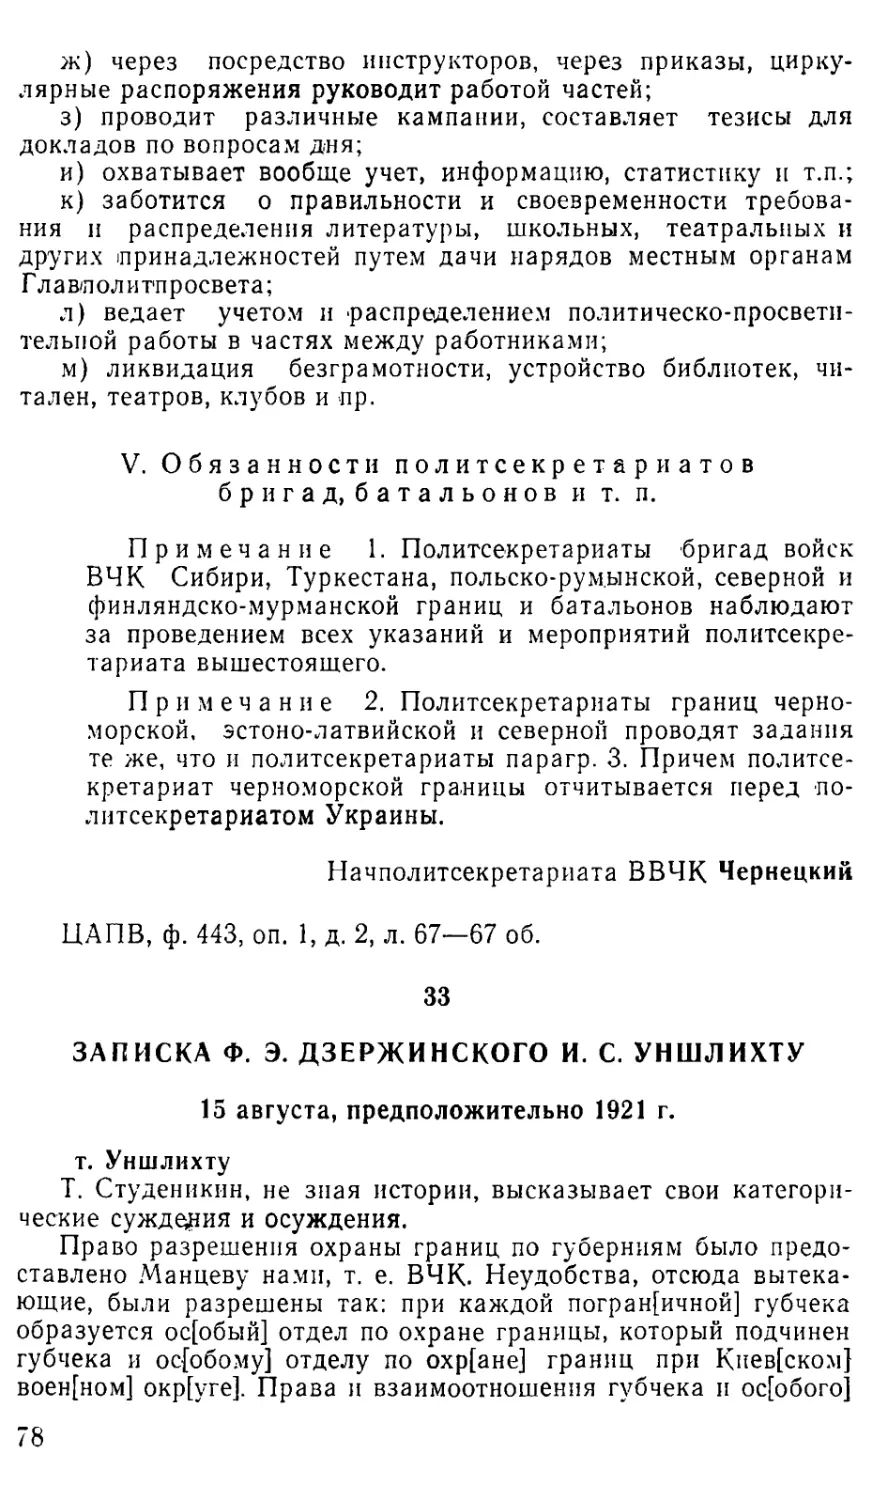 33. Записка Ф. Э. Дзержинского И. С. Уншлихту. 15 августа, предположительно 1921 г